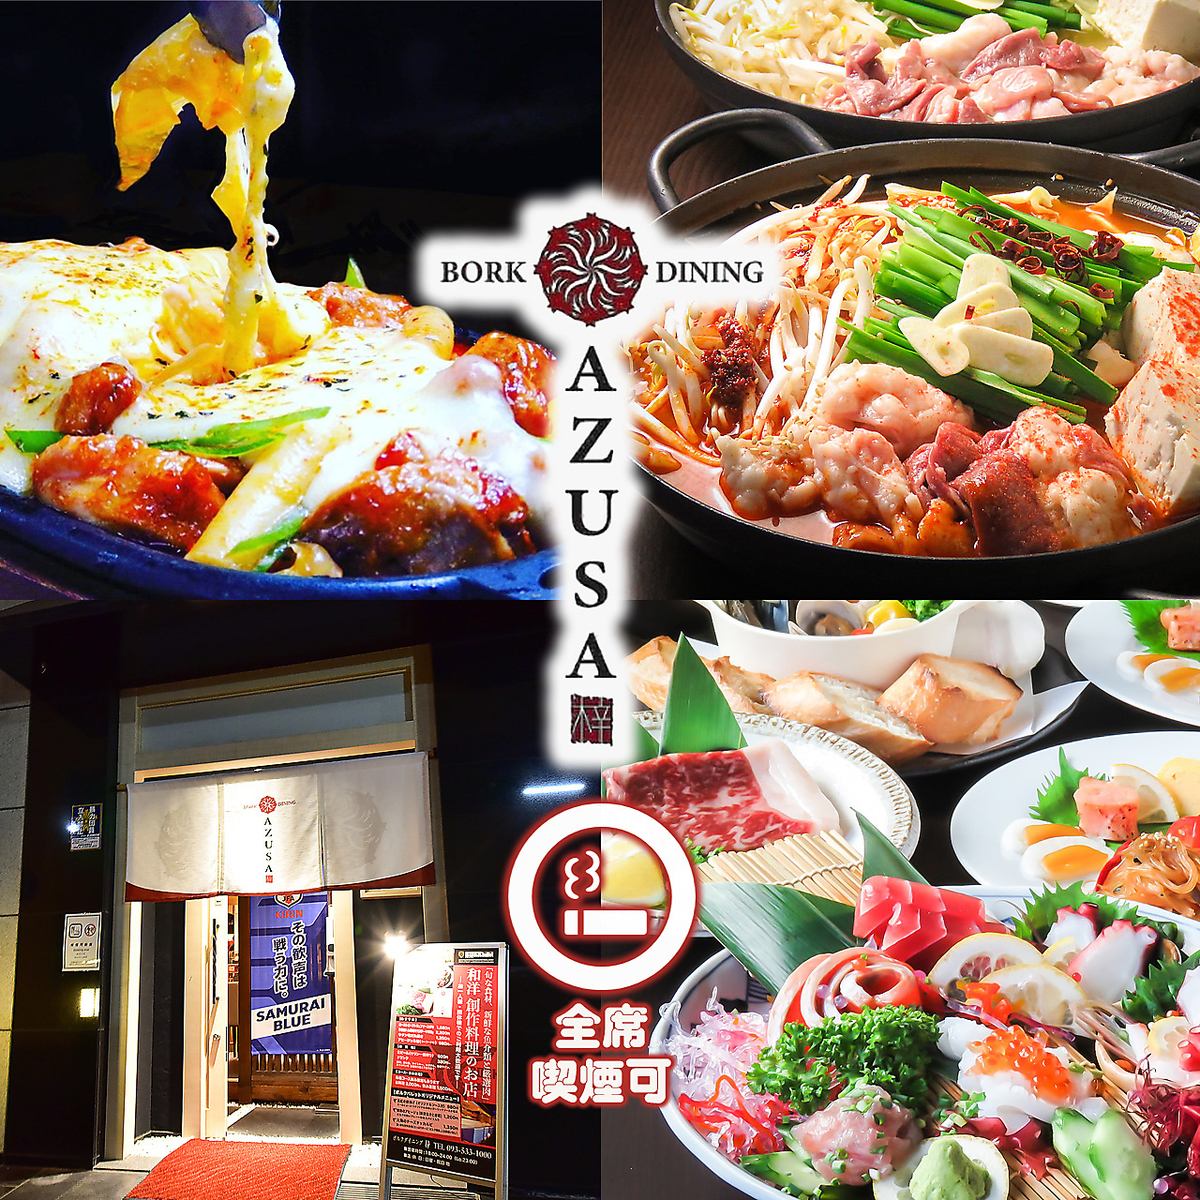 供应日式和西式创意料理的餐厅，您可以享用时令鲜鱼、火锅、和牛牛排以及运动员制作的当地美食。